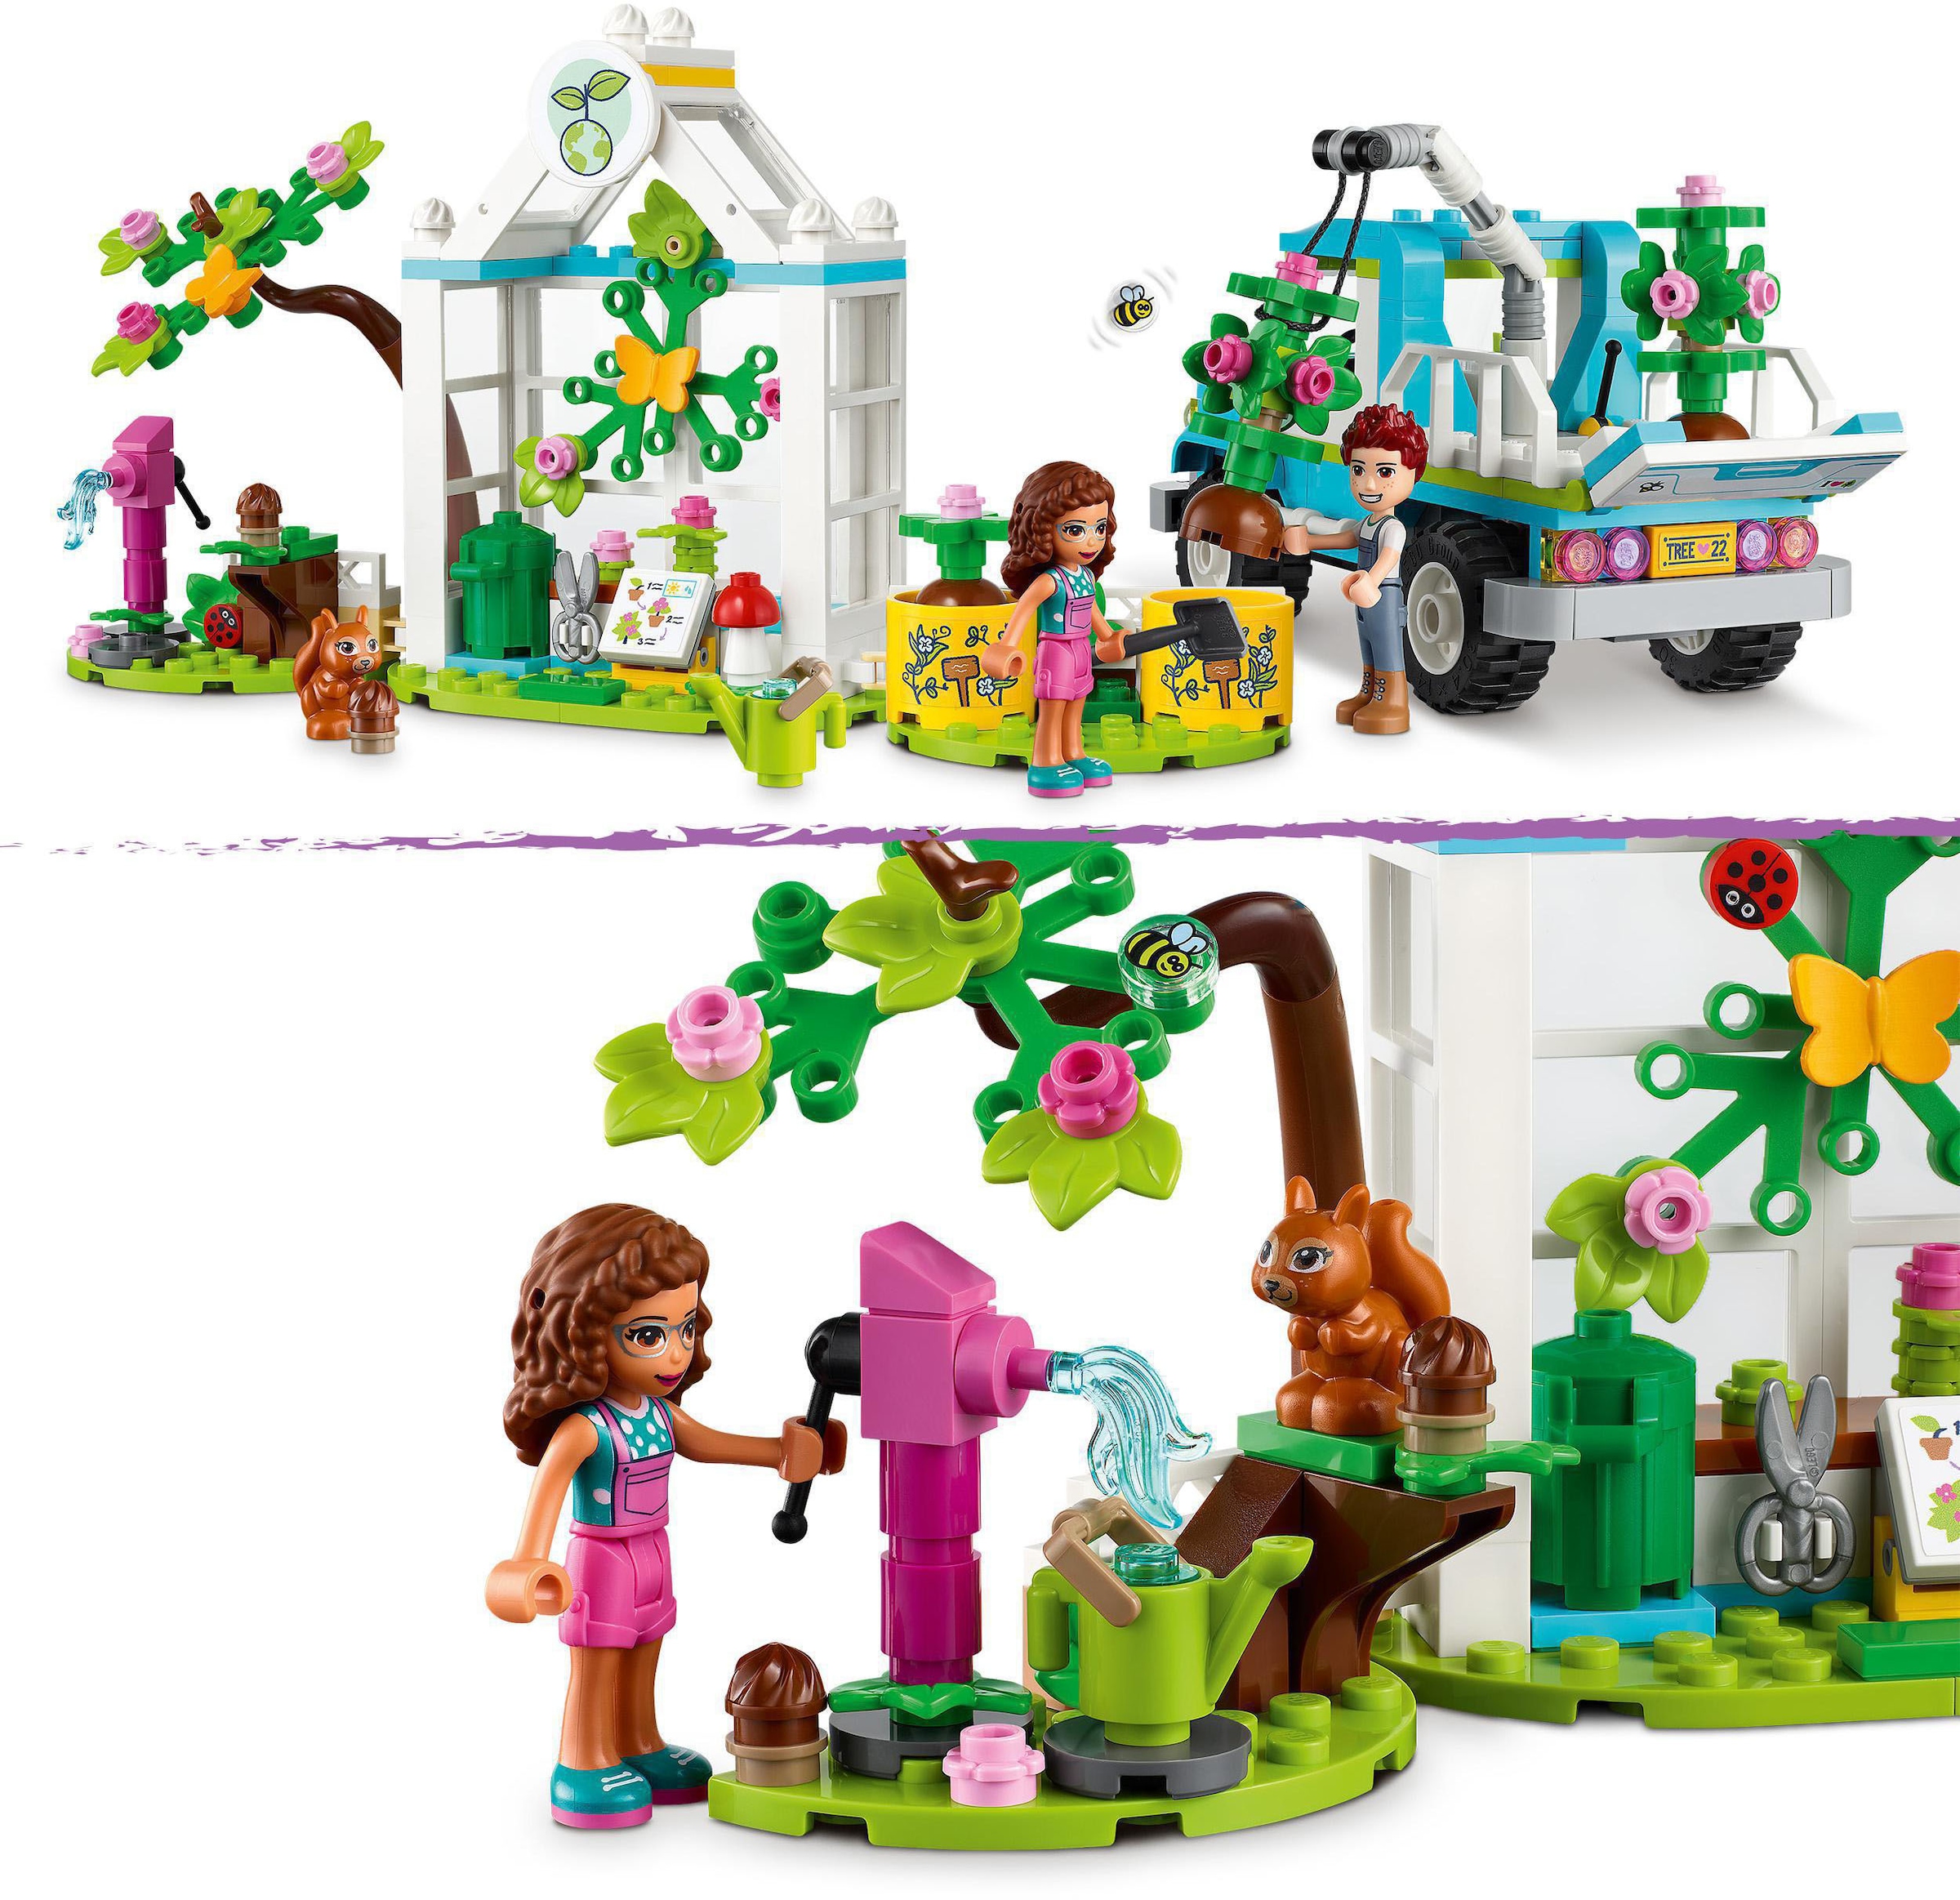 LEGO® Konstruktionsspielsteine »Baumpflanzungsfahrzeug (41707), LEGO® Friends«, (336 St.)